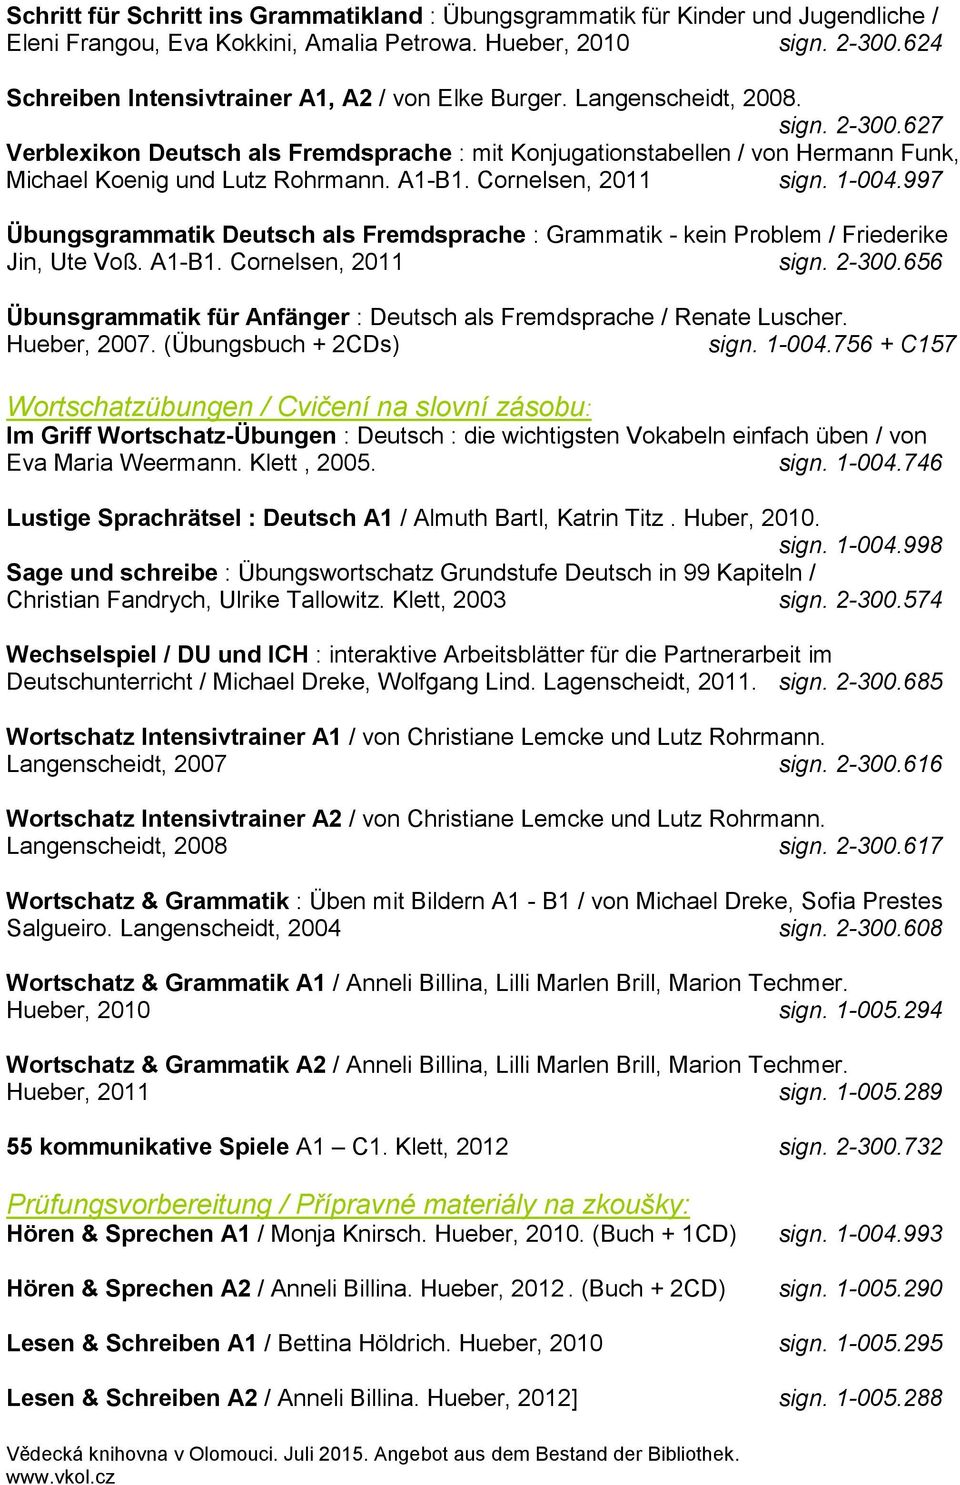 627 Verblexikon Deutsch als Fremdsprache : mit Konjugationstabellen / von Hermann Funk, Michael Koenig und Lutz Rohrmann. A1-B1. Cornelsen, 2011 sign. 1-004.